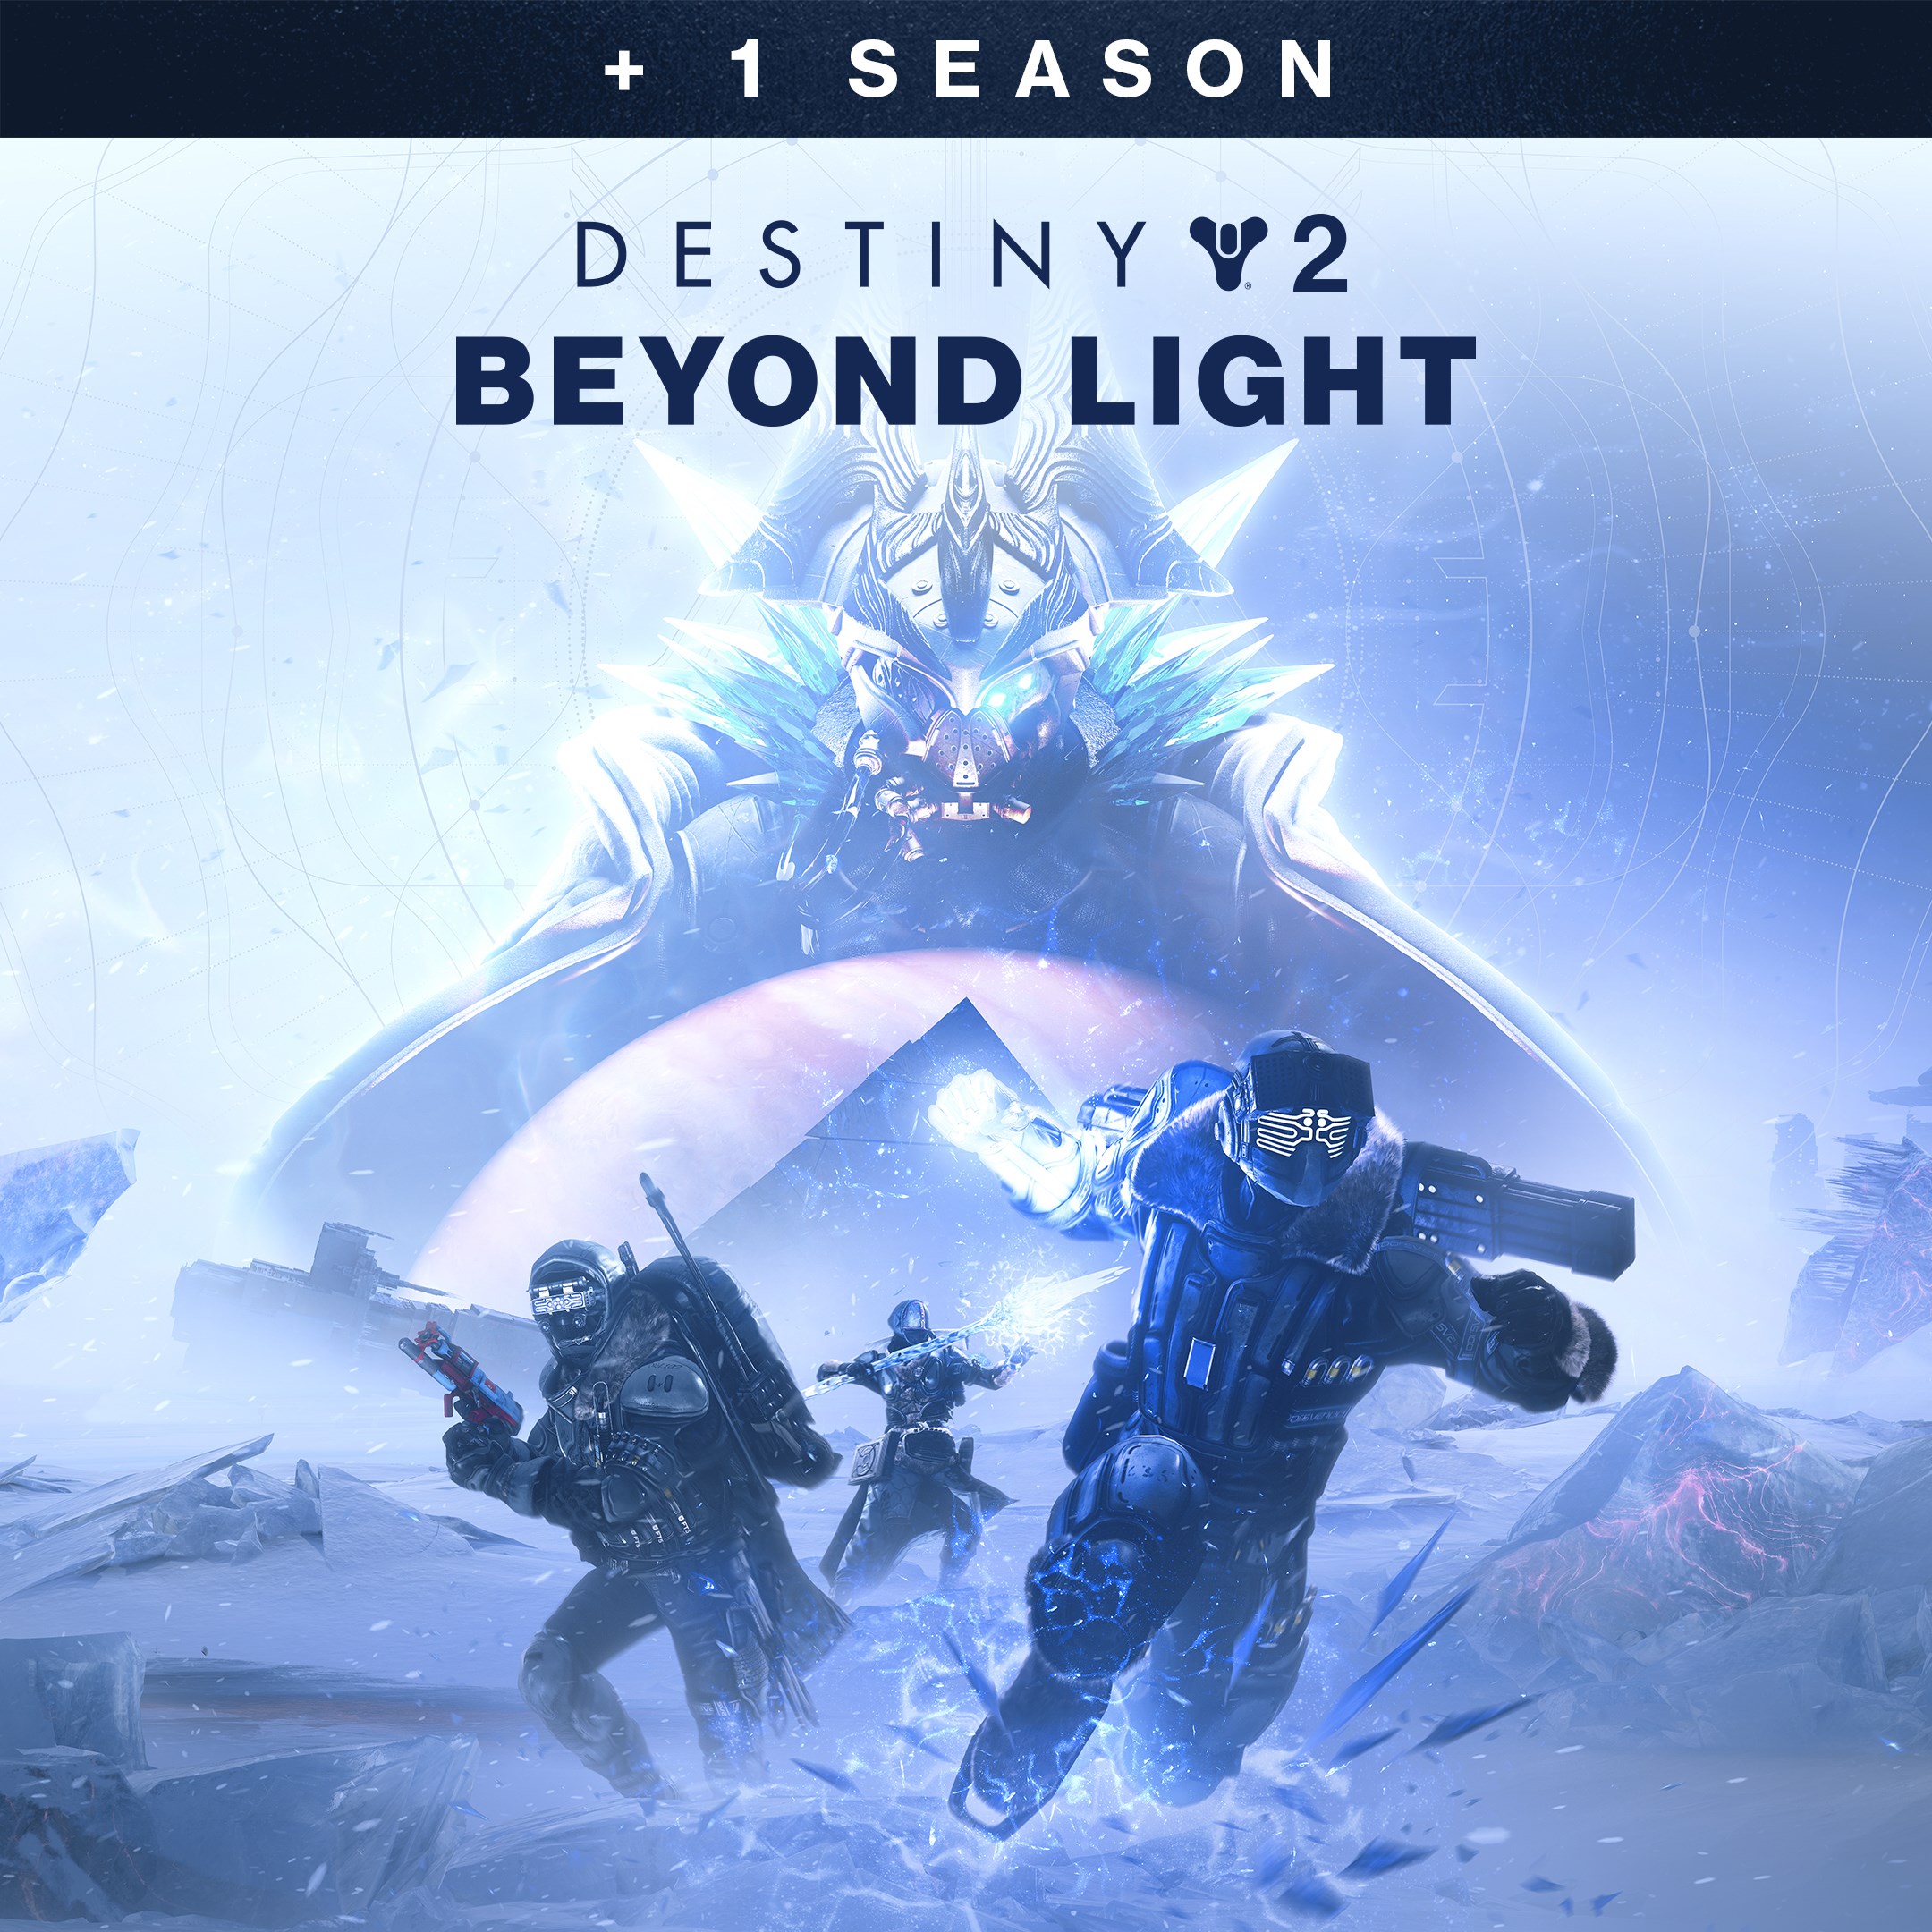 Destiny 2 Beyond Light + 1 Season PC